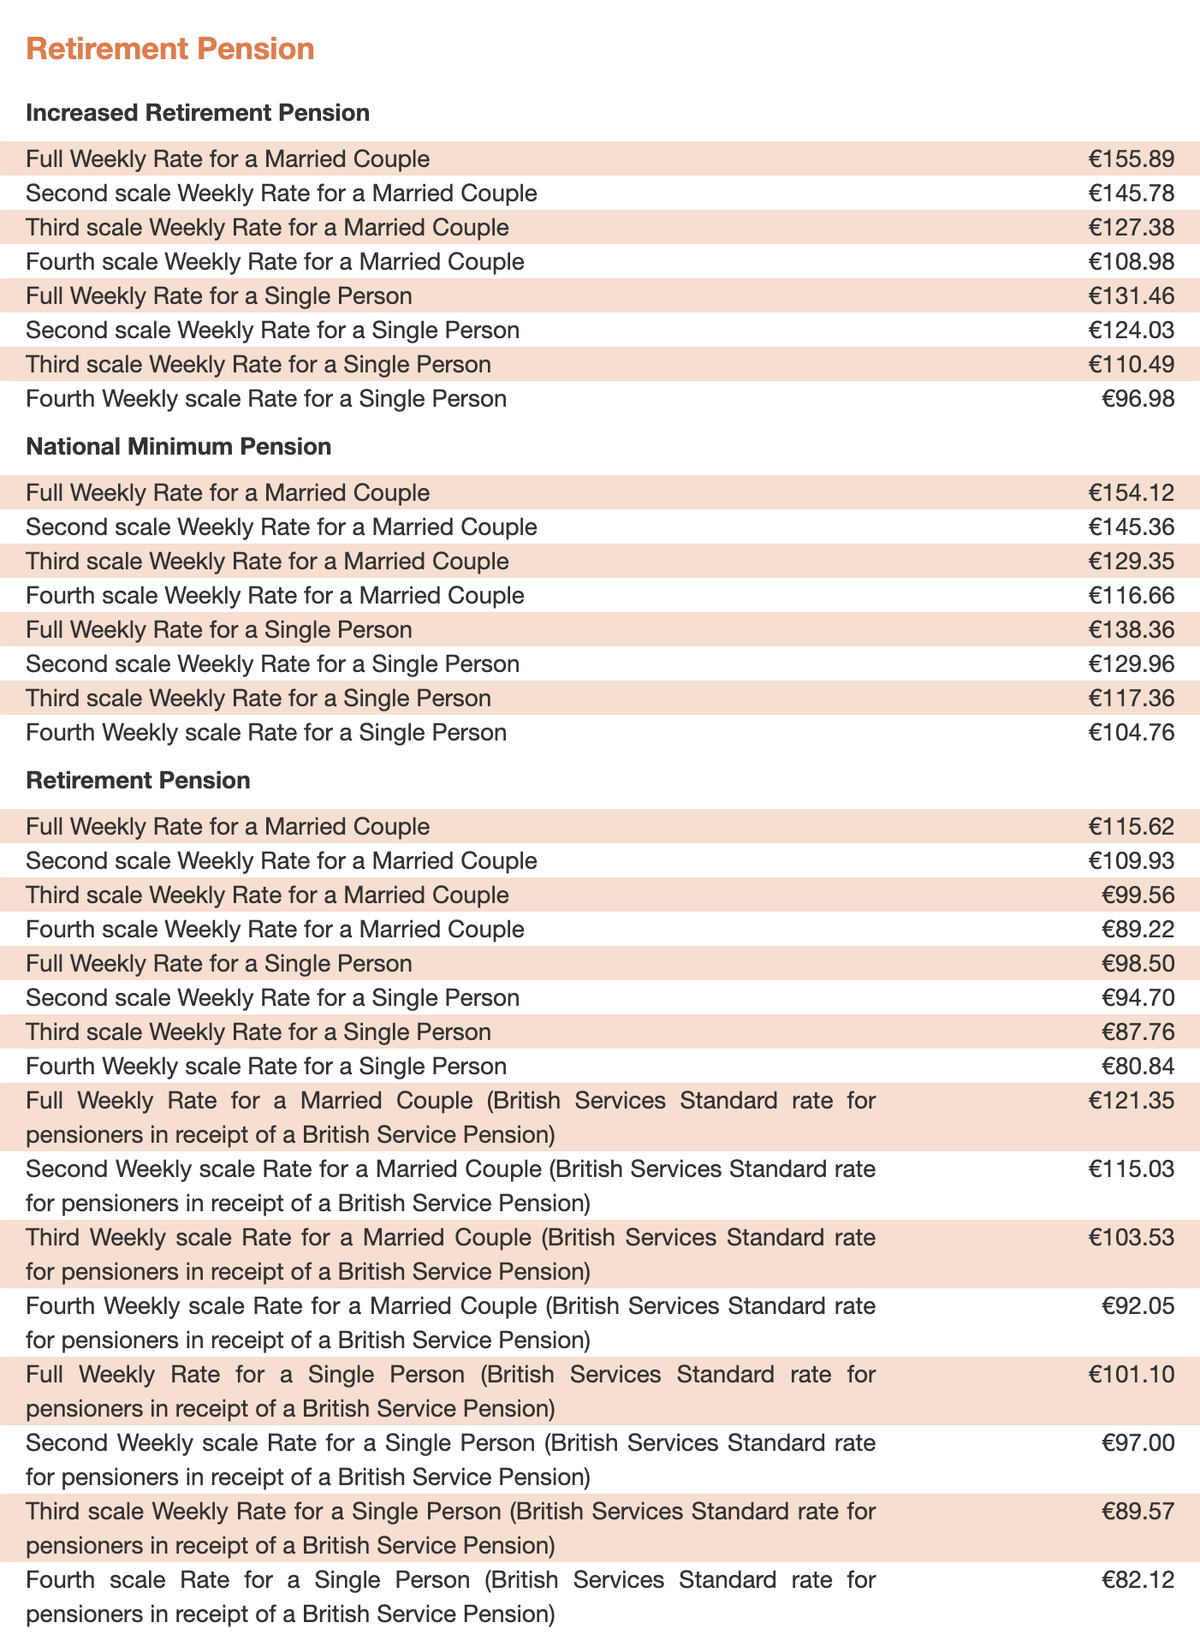 Пенсионные выплаты зависят от множества разных параметров, вот только некоторые примеры выплат с официального сайта программы государственного социального обеспечения Мальты